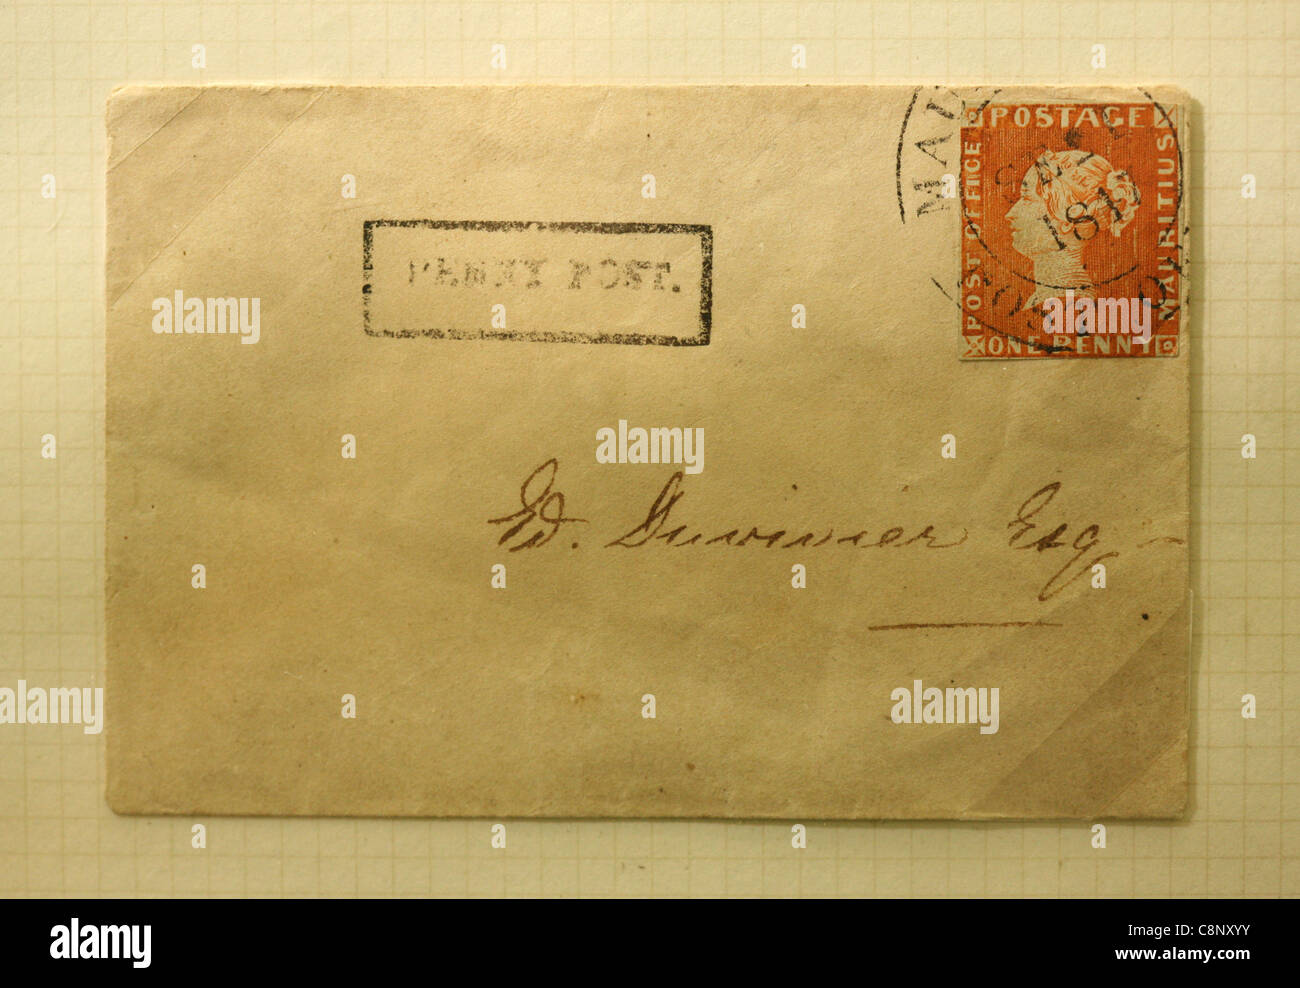 Die Mauritius "Post Office" einen Penny rote Stempel auf den Briefumschlag. Eines der seltensten Briefmarken der Welt. Stockfoto